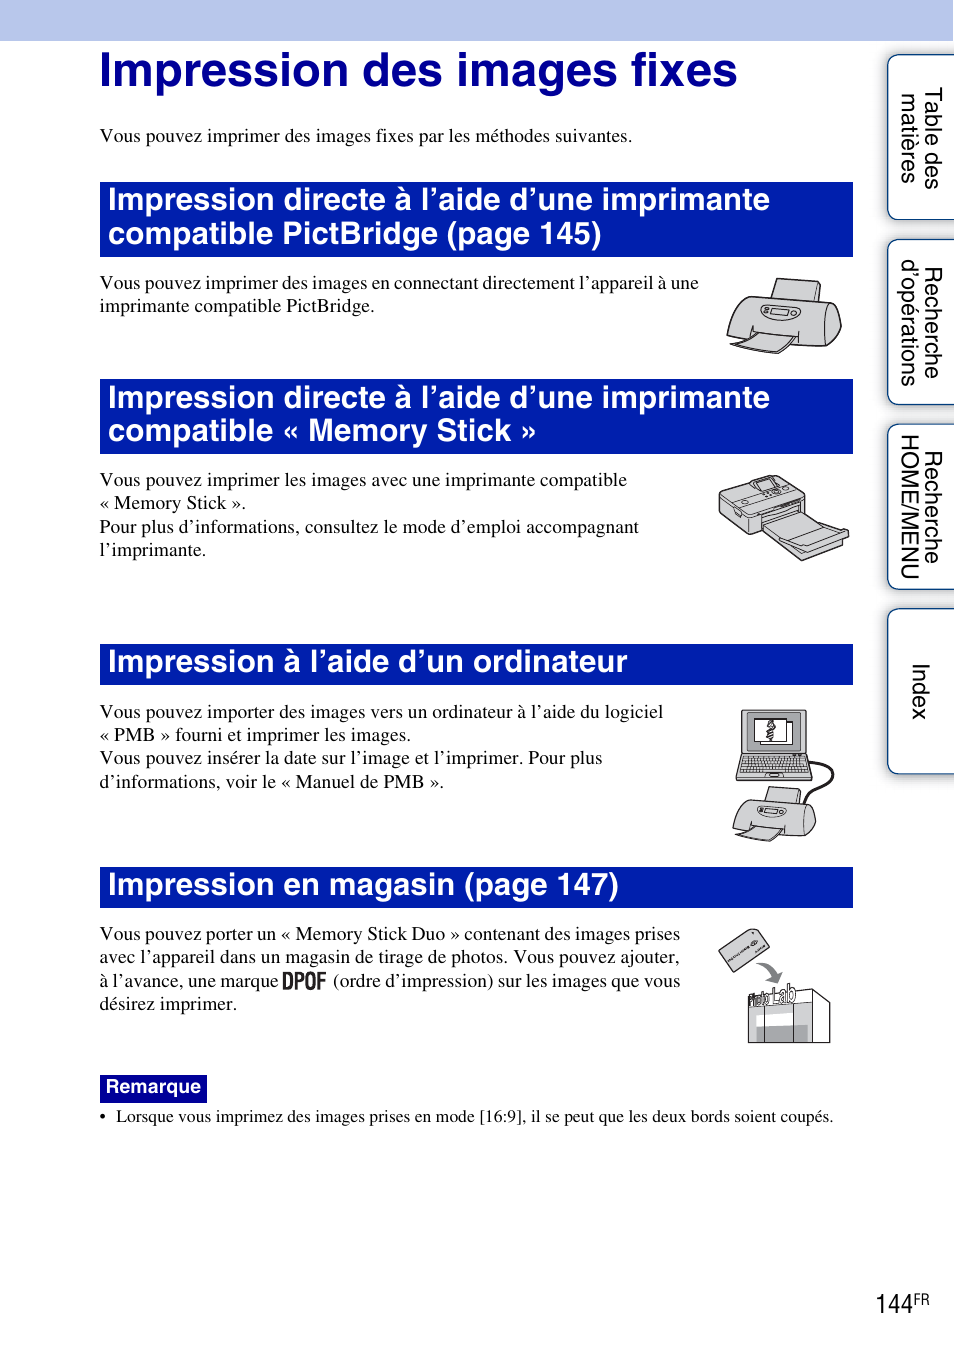 Impression des images fixes | Sony DSC-T900 Manuel d'utilisation | Page 144 / 171